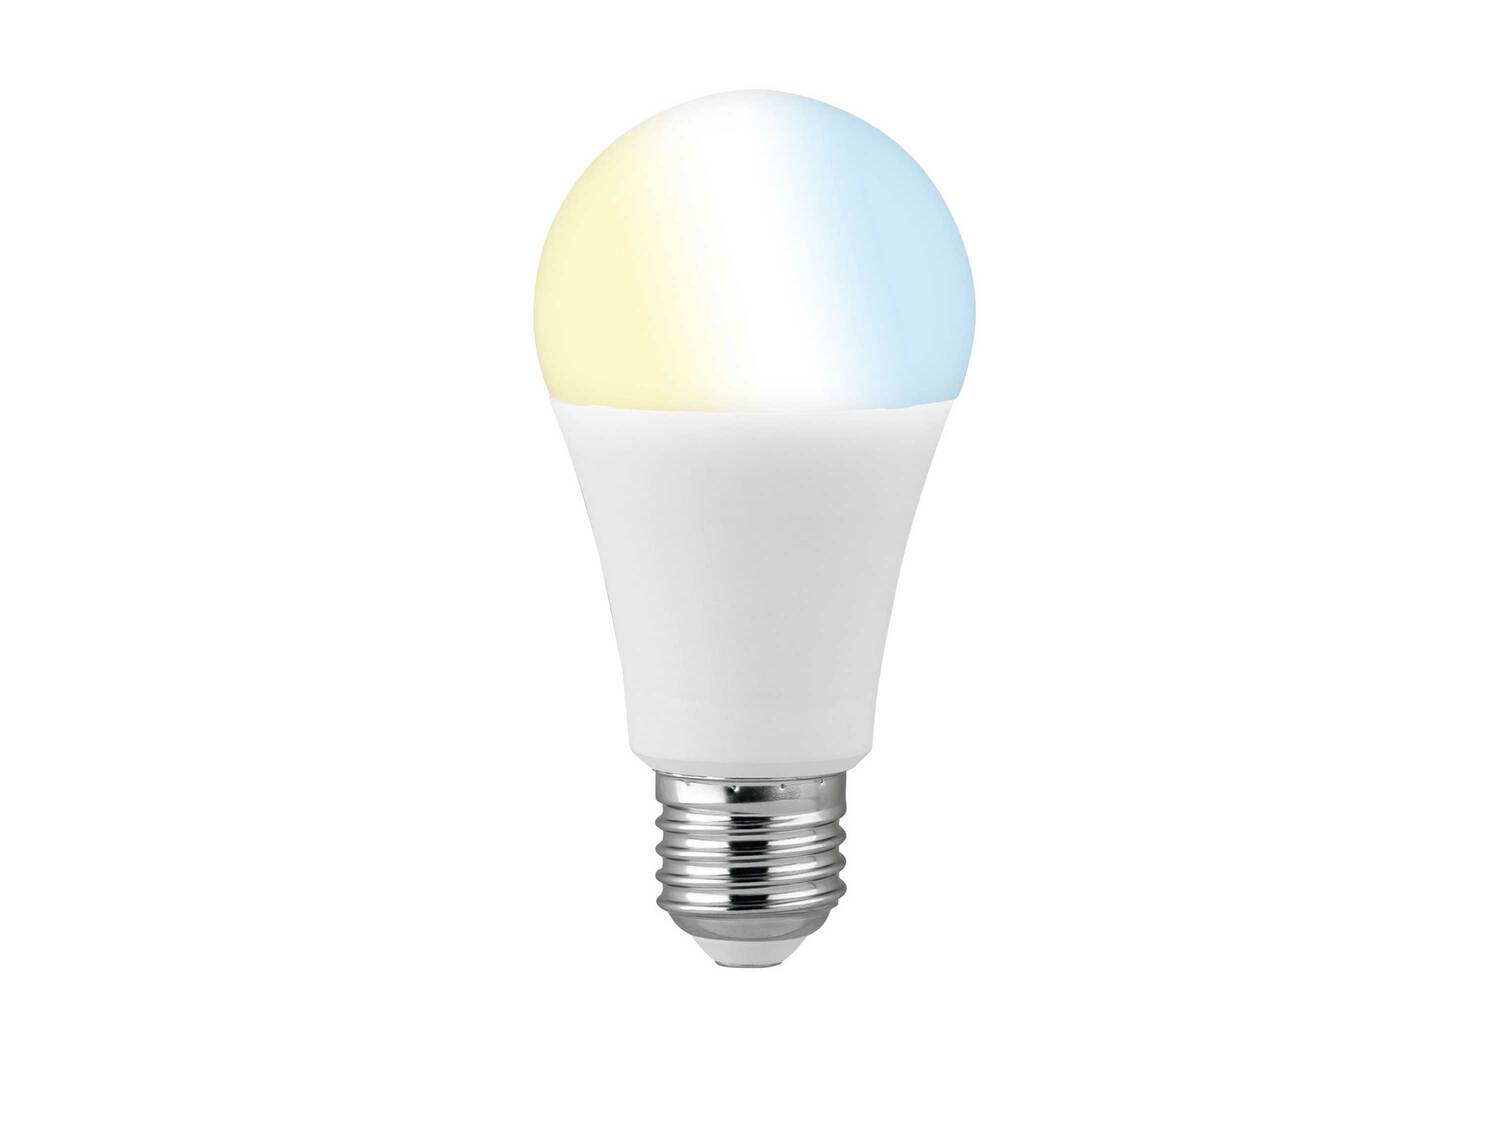 Ampoule LED connectée , le prix 8.99 € 
- Au choix :
- E14 : 6 W, 470 lm
- ...